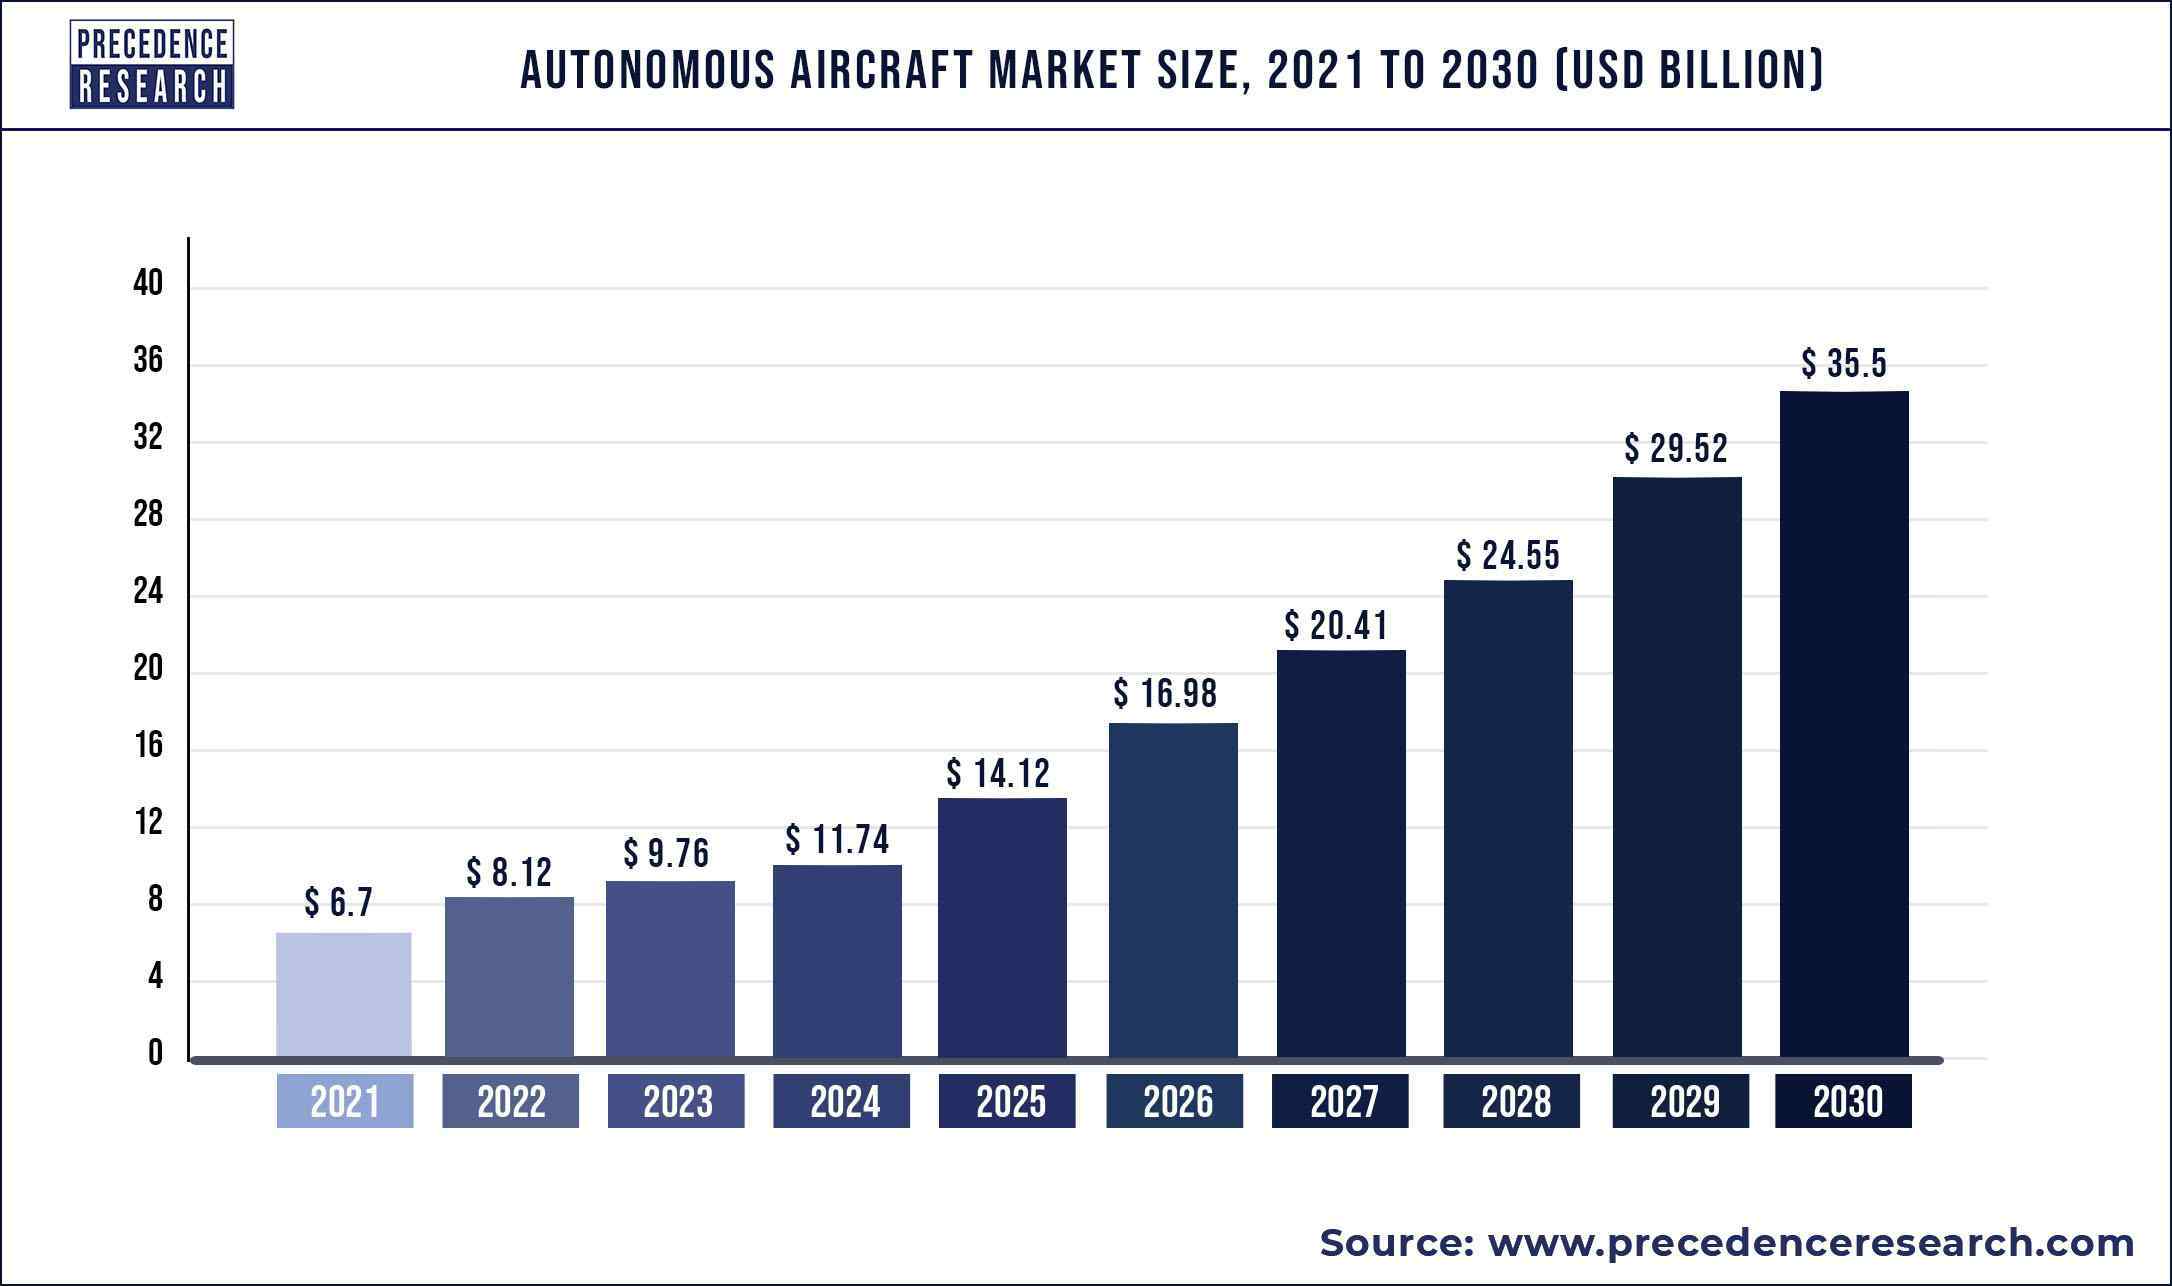 Autonomous Aircraft Market Size 2021 to 2030